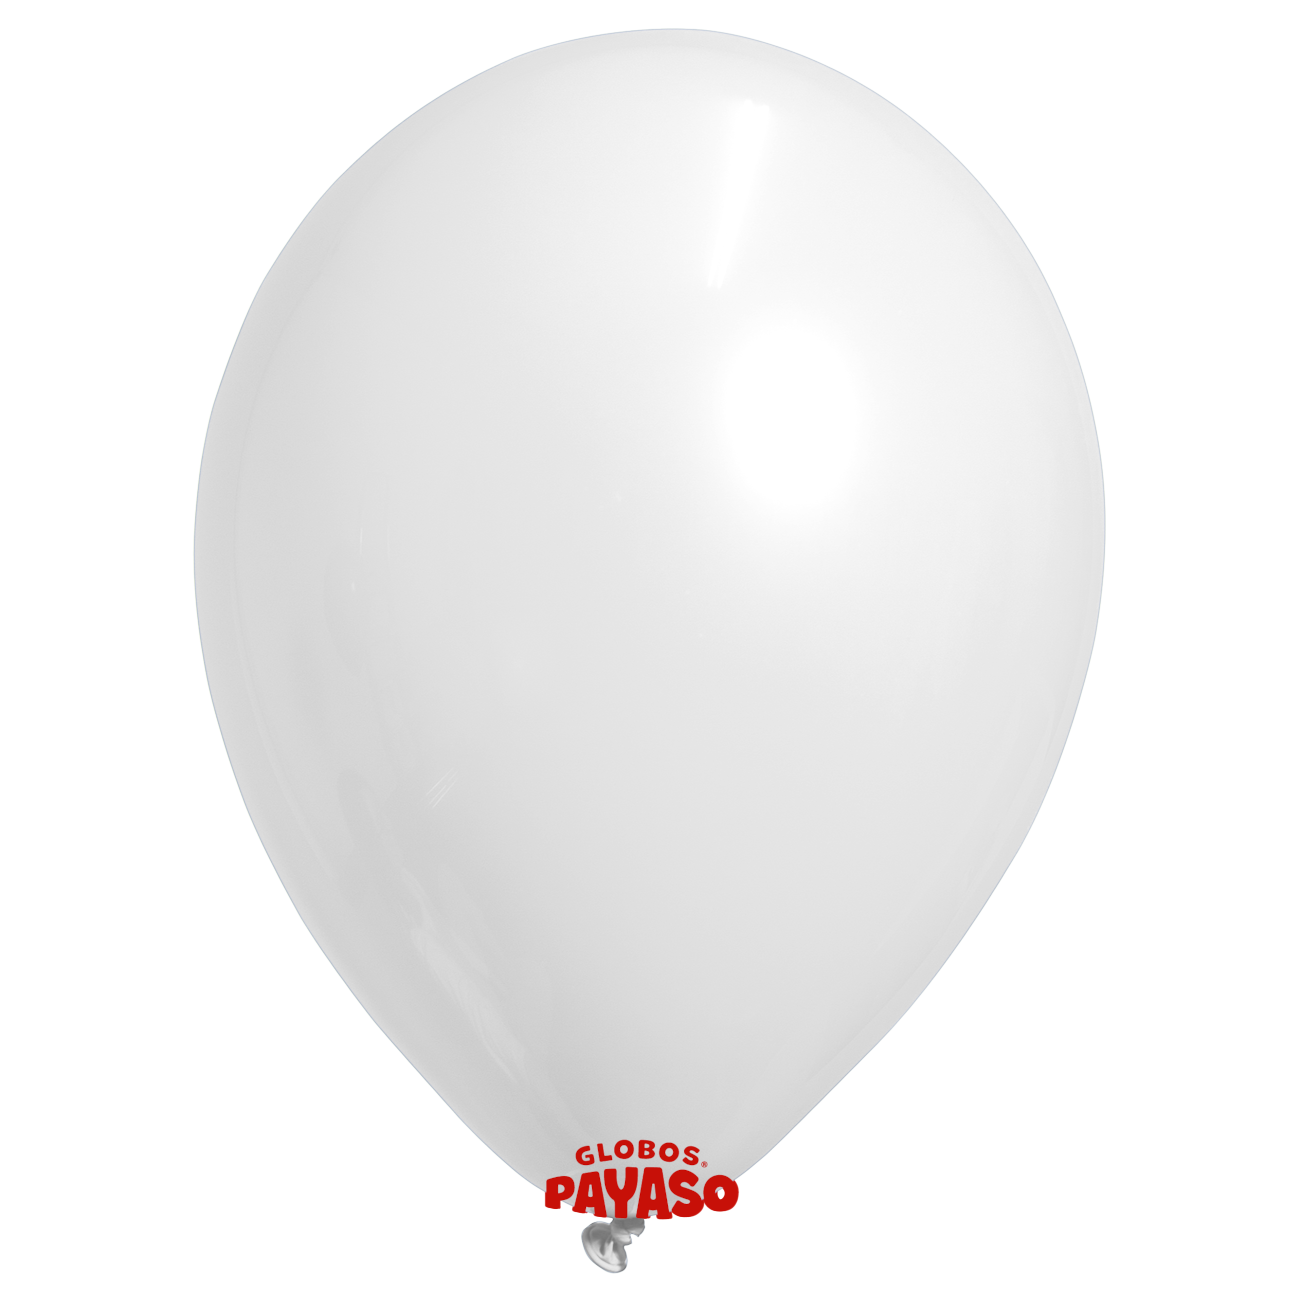 Globos Payaso / Unique 5" White Pastel Balloon